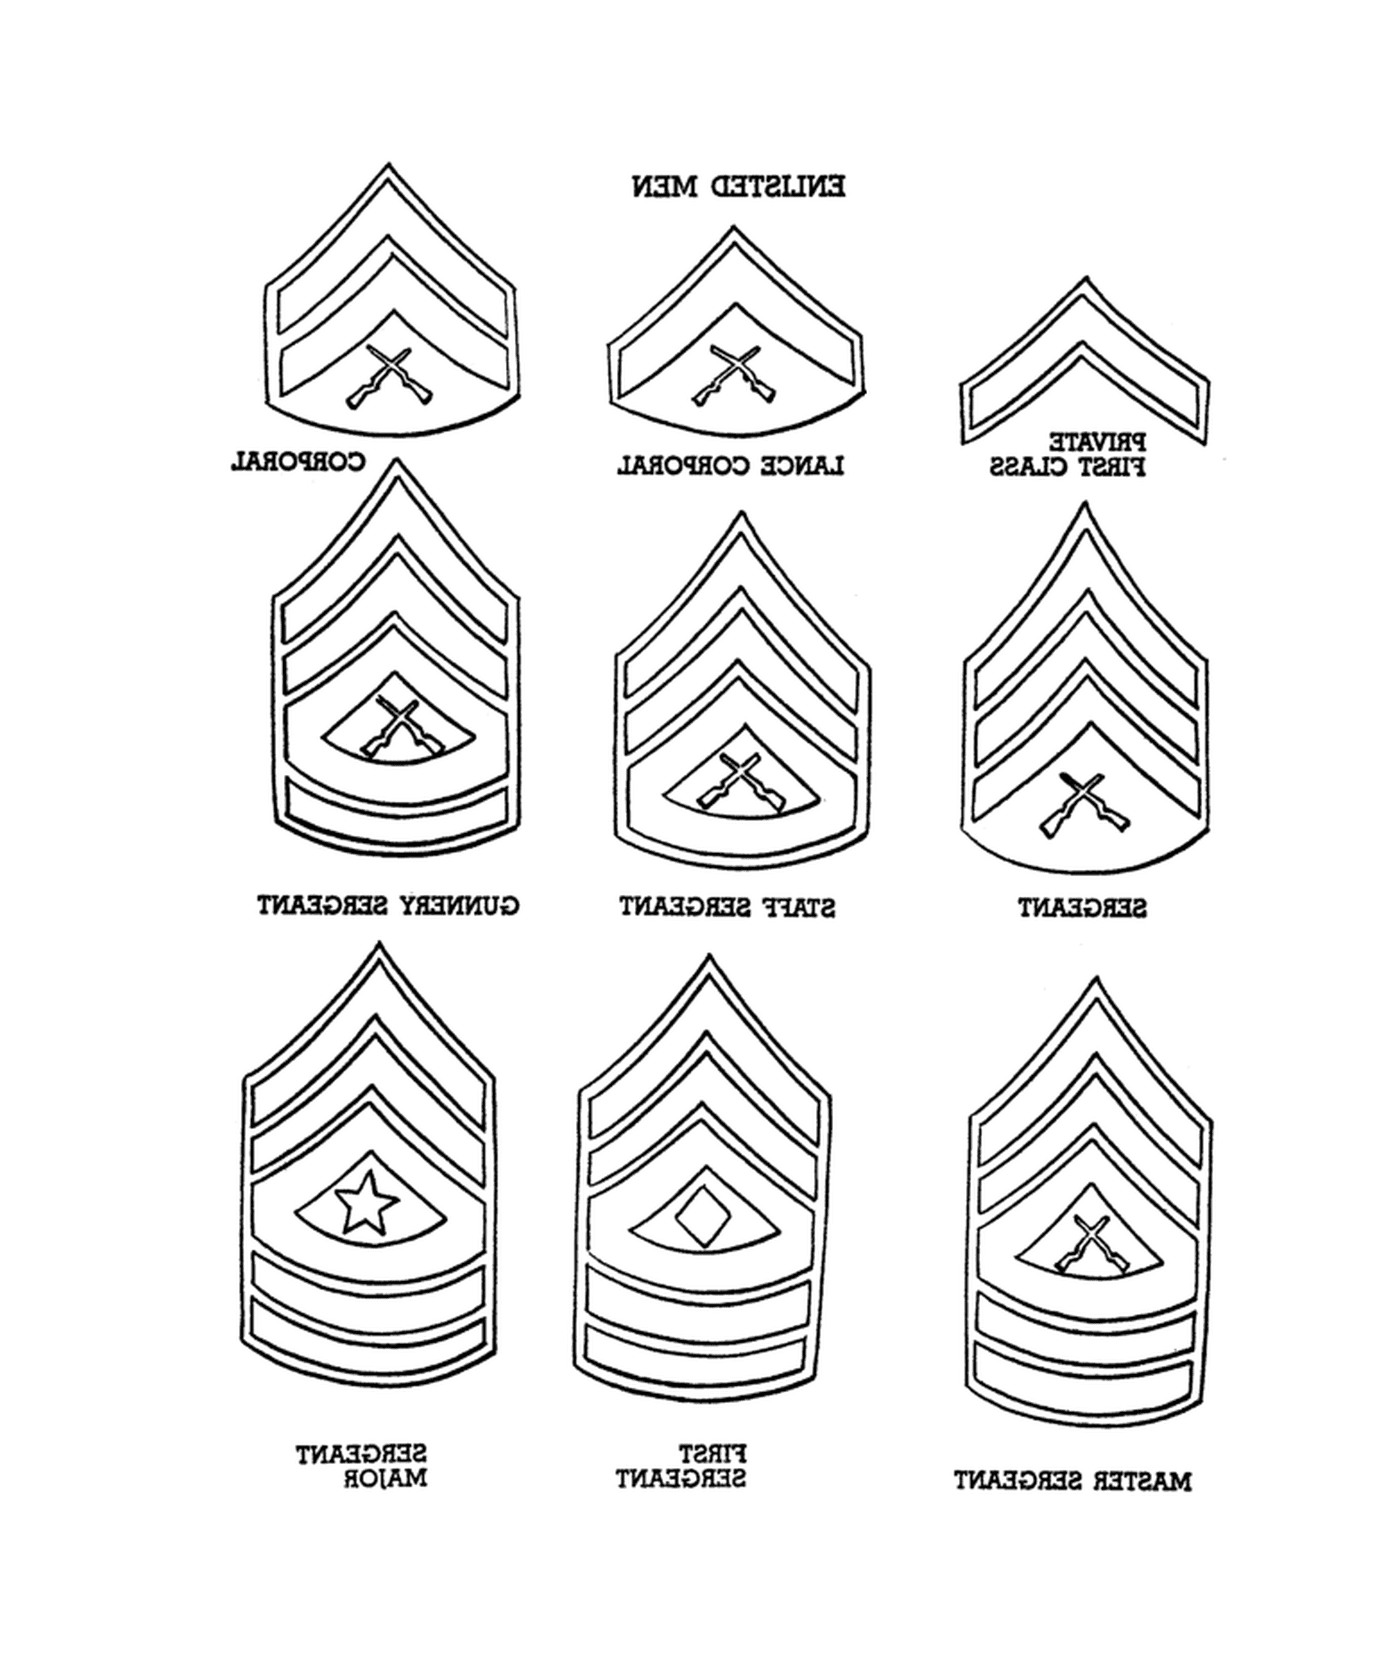  Classifica del Corpo Marittima: una serie di nove insegne di diverso rango militare 